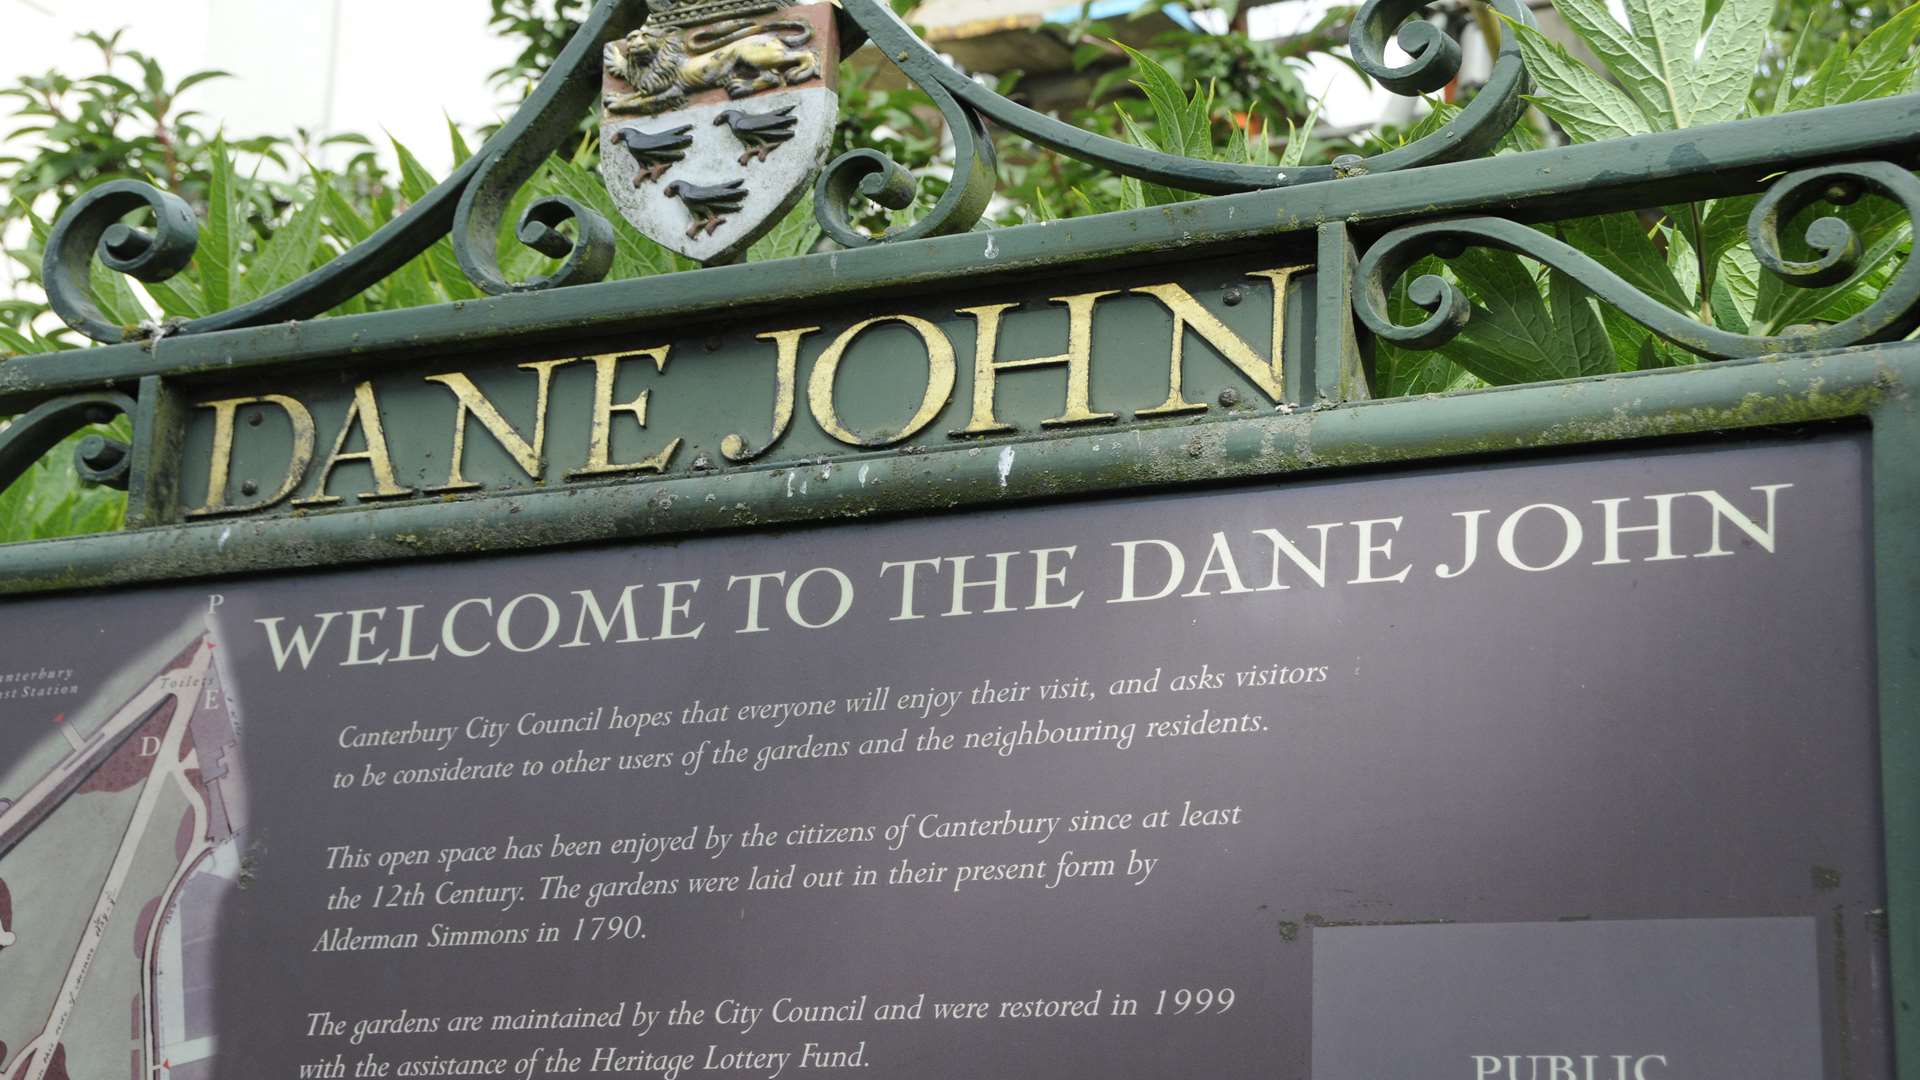 The entrance to Dane John Gardens in Canterbury